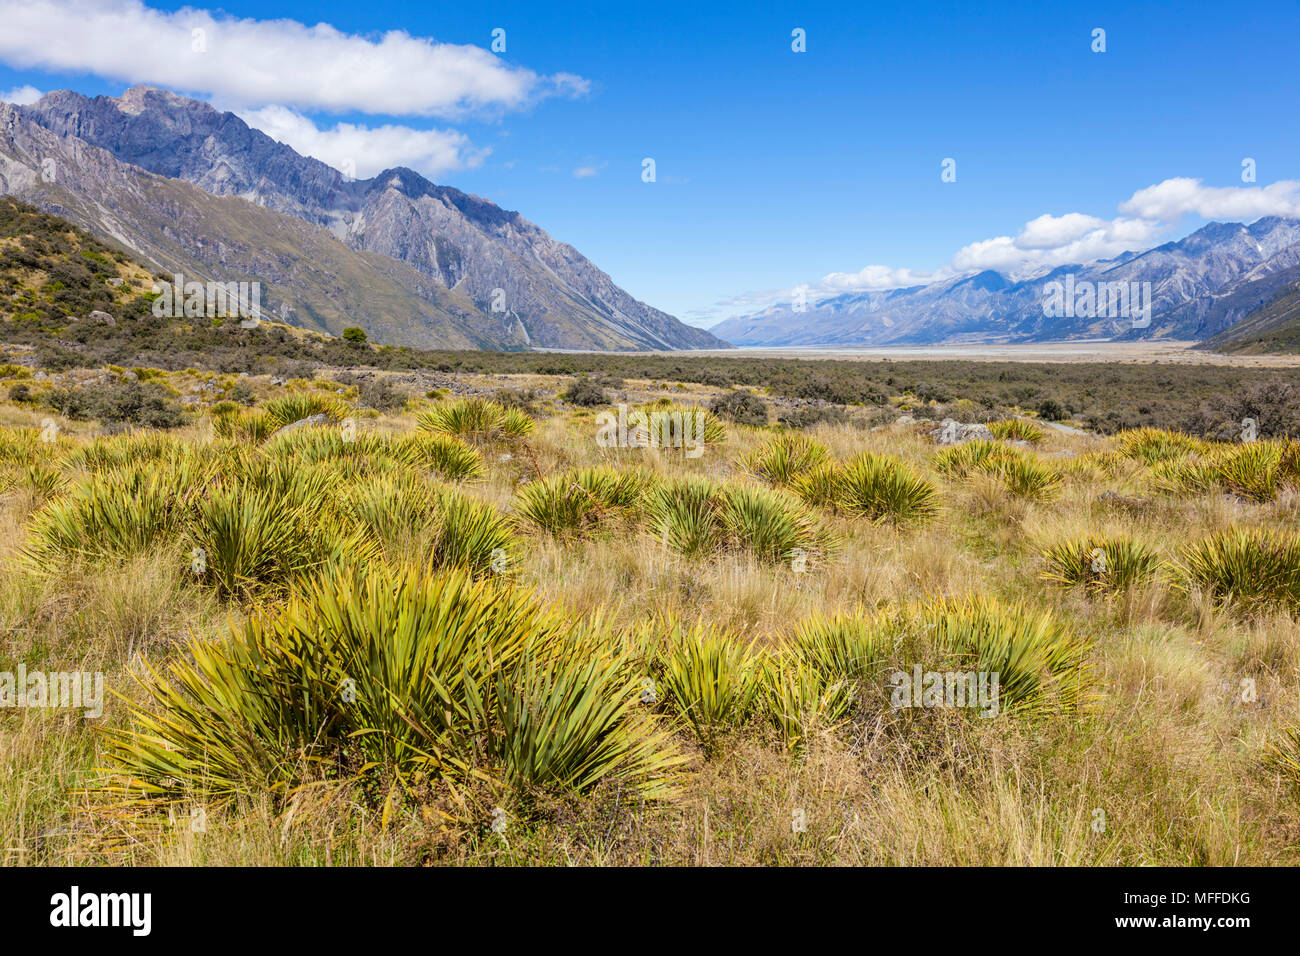 Mount Cook Nationalpark Aussicht vom Pfad zur Tasman Gletscher Neuseeland Island New South Neue zealandnew zealand South Island, Neuseeland Stockfoto